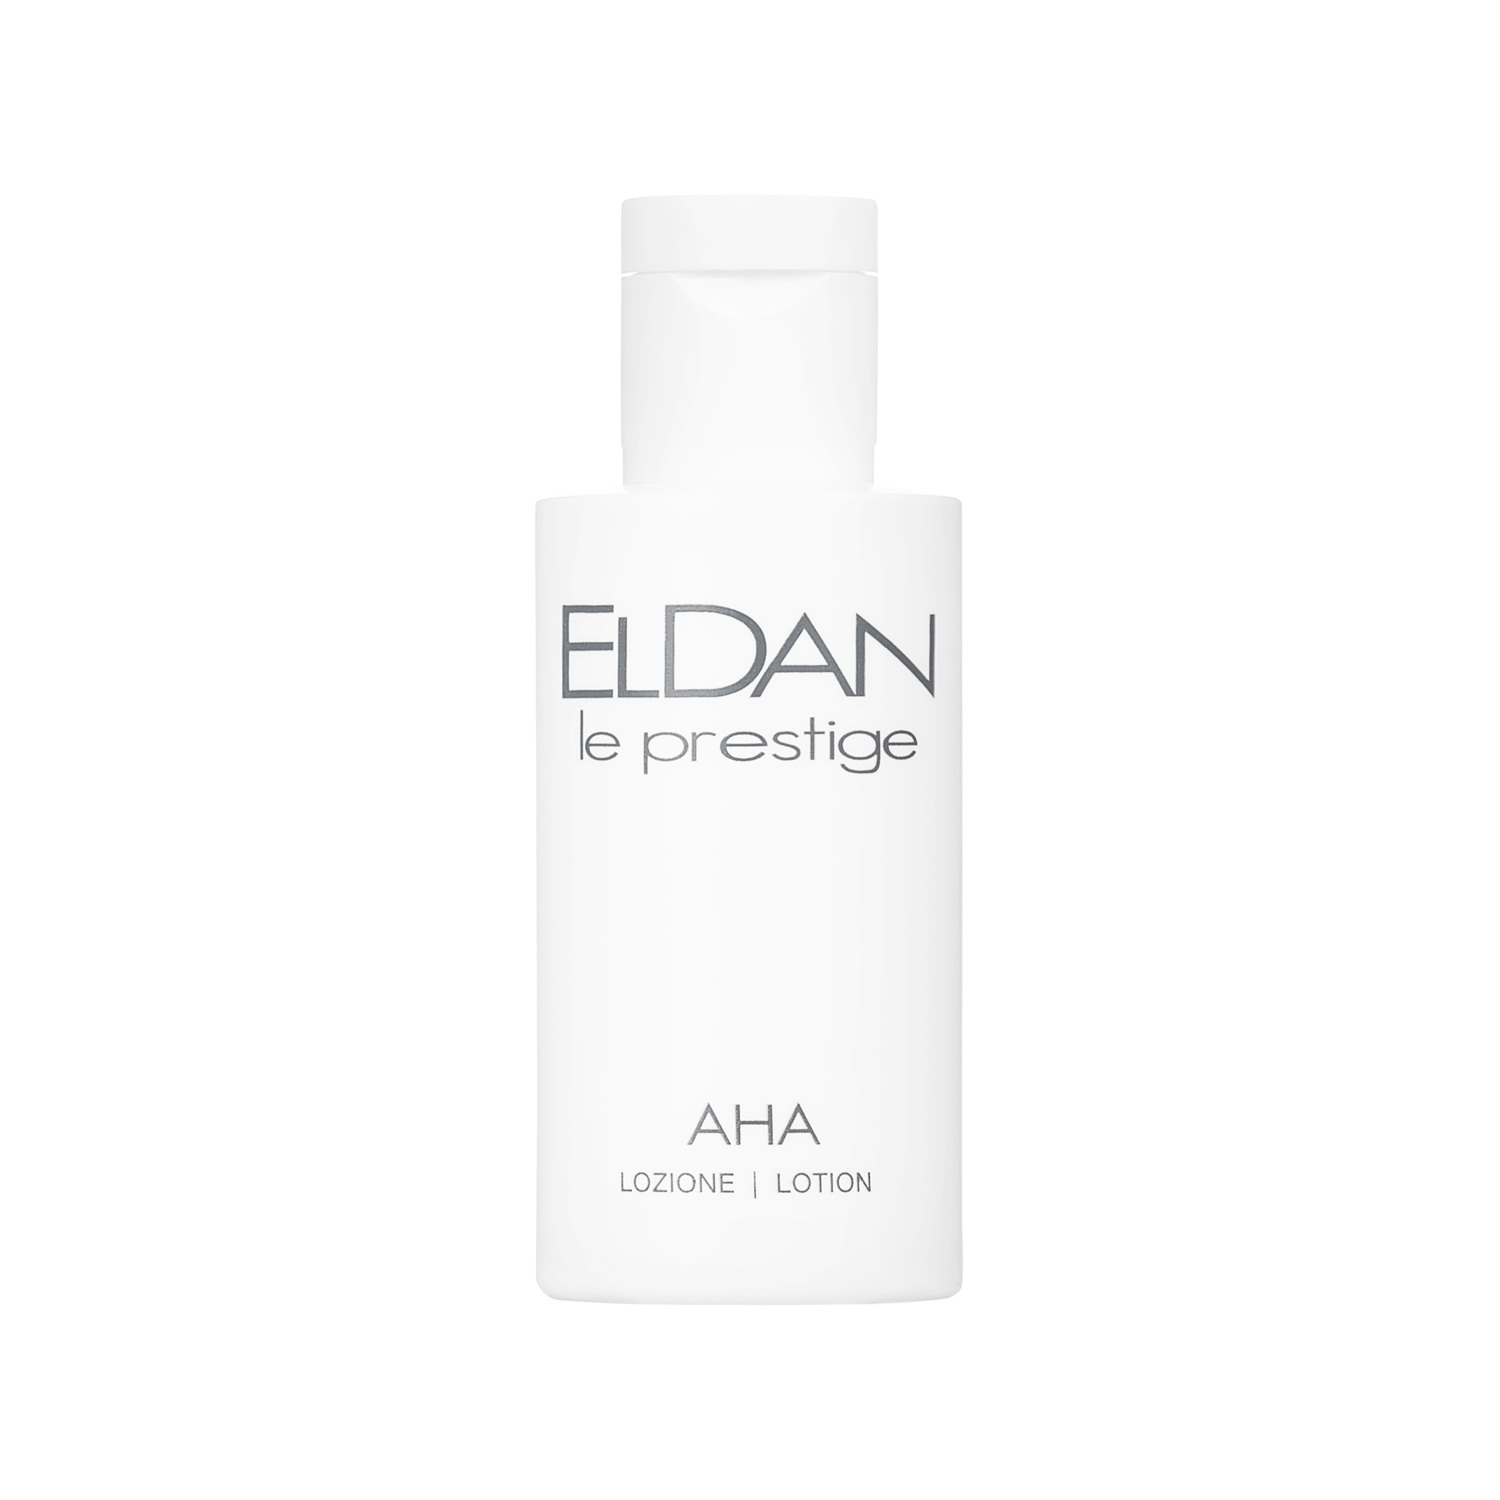 Пилинг для лица ELDAN Cosmetics AHA Peel Lotion с кислотами, профессиональный, 50 мл энзимный пилинг с каолином и коллагеназой natural peel